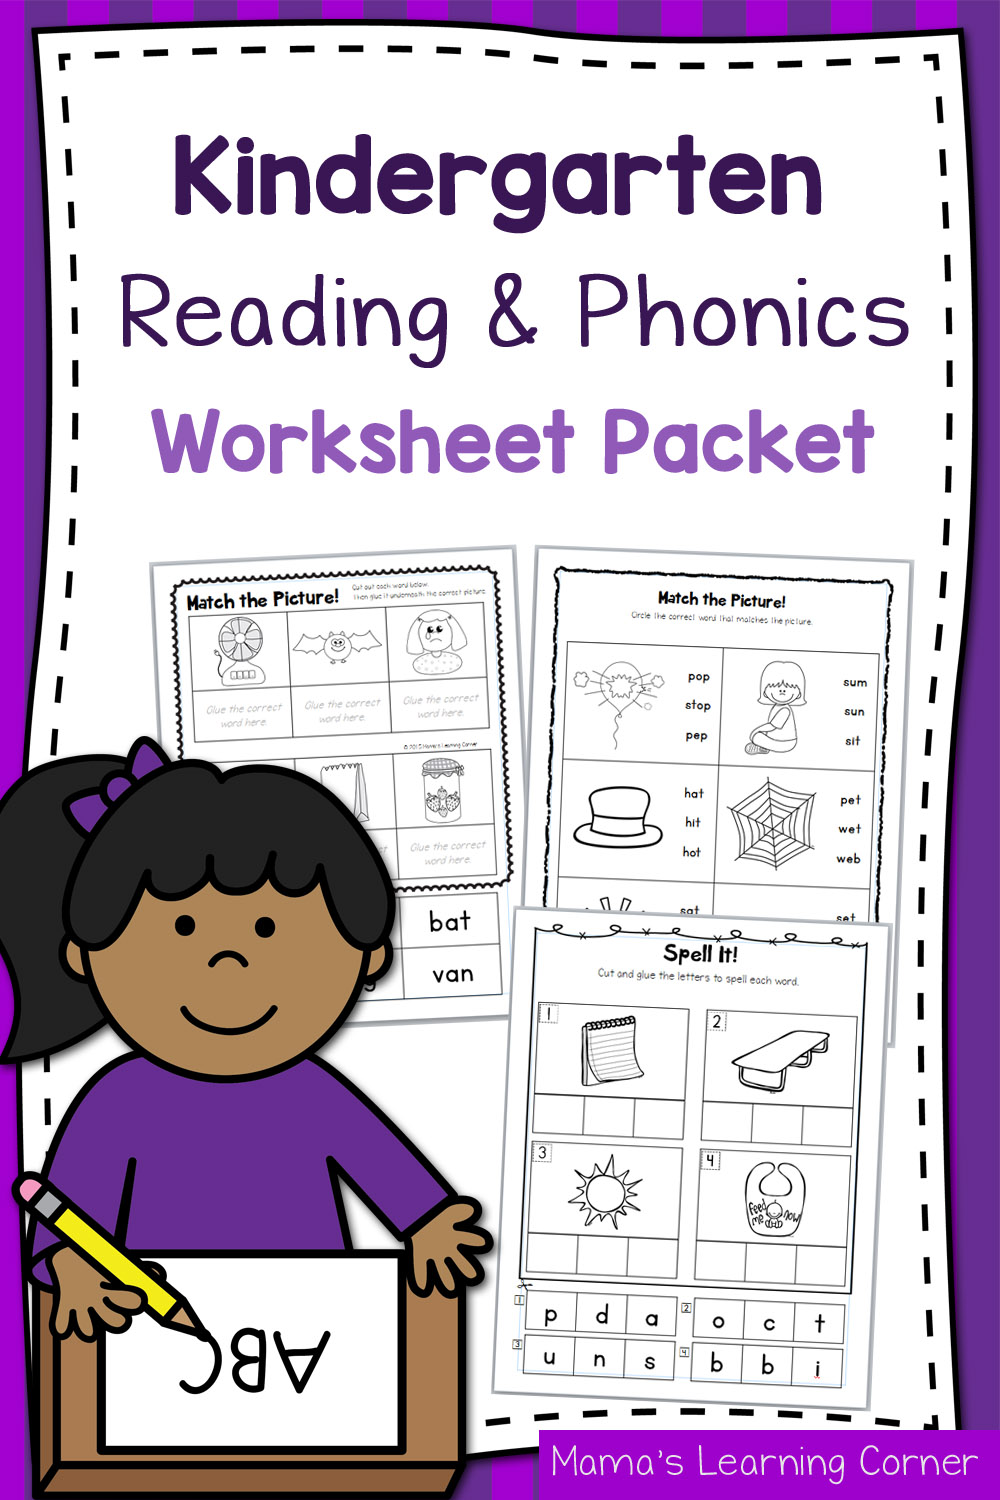 Kindergarten Reading and Phonics Packet 1 - Kindergarten Reading Passages